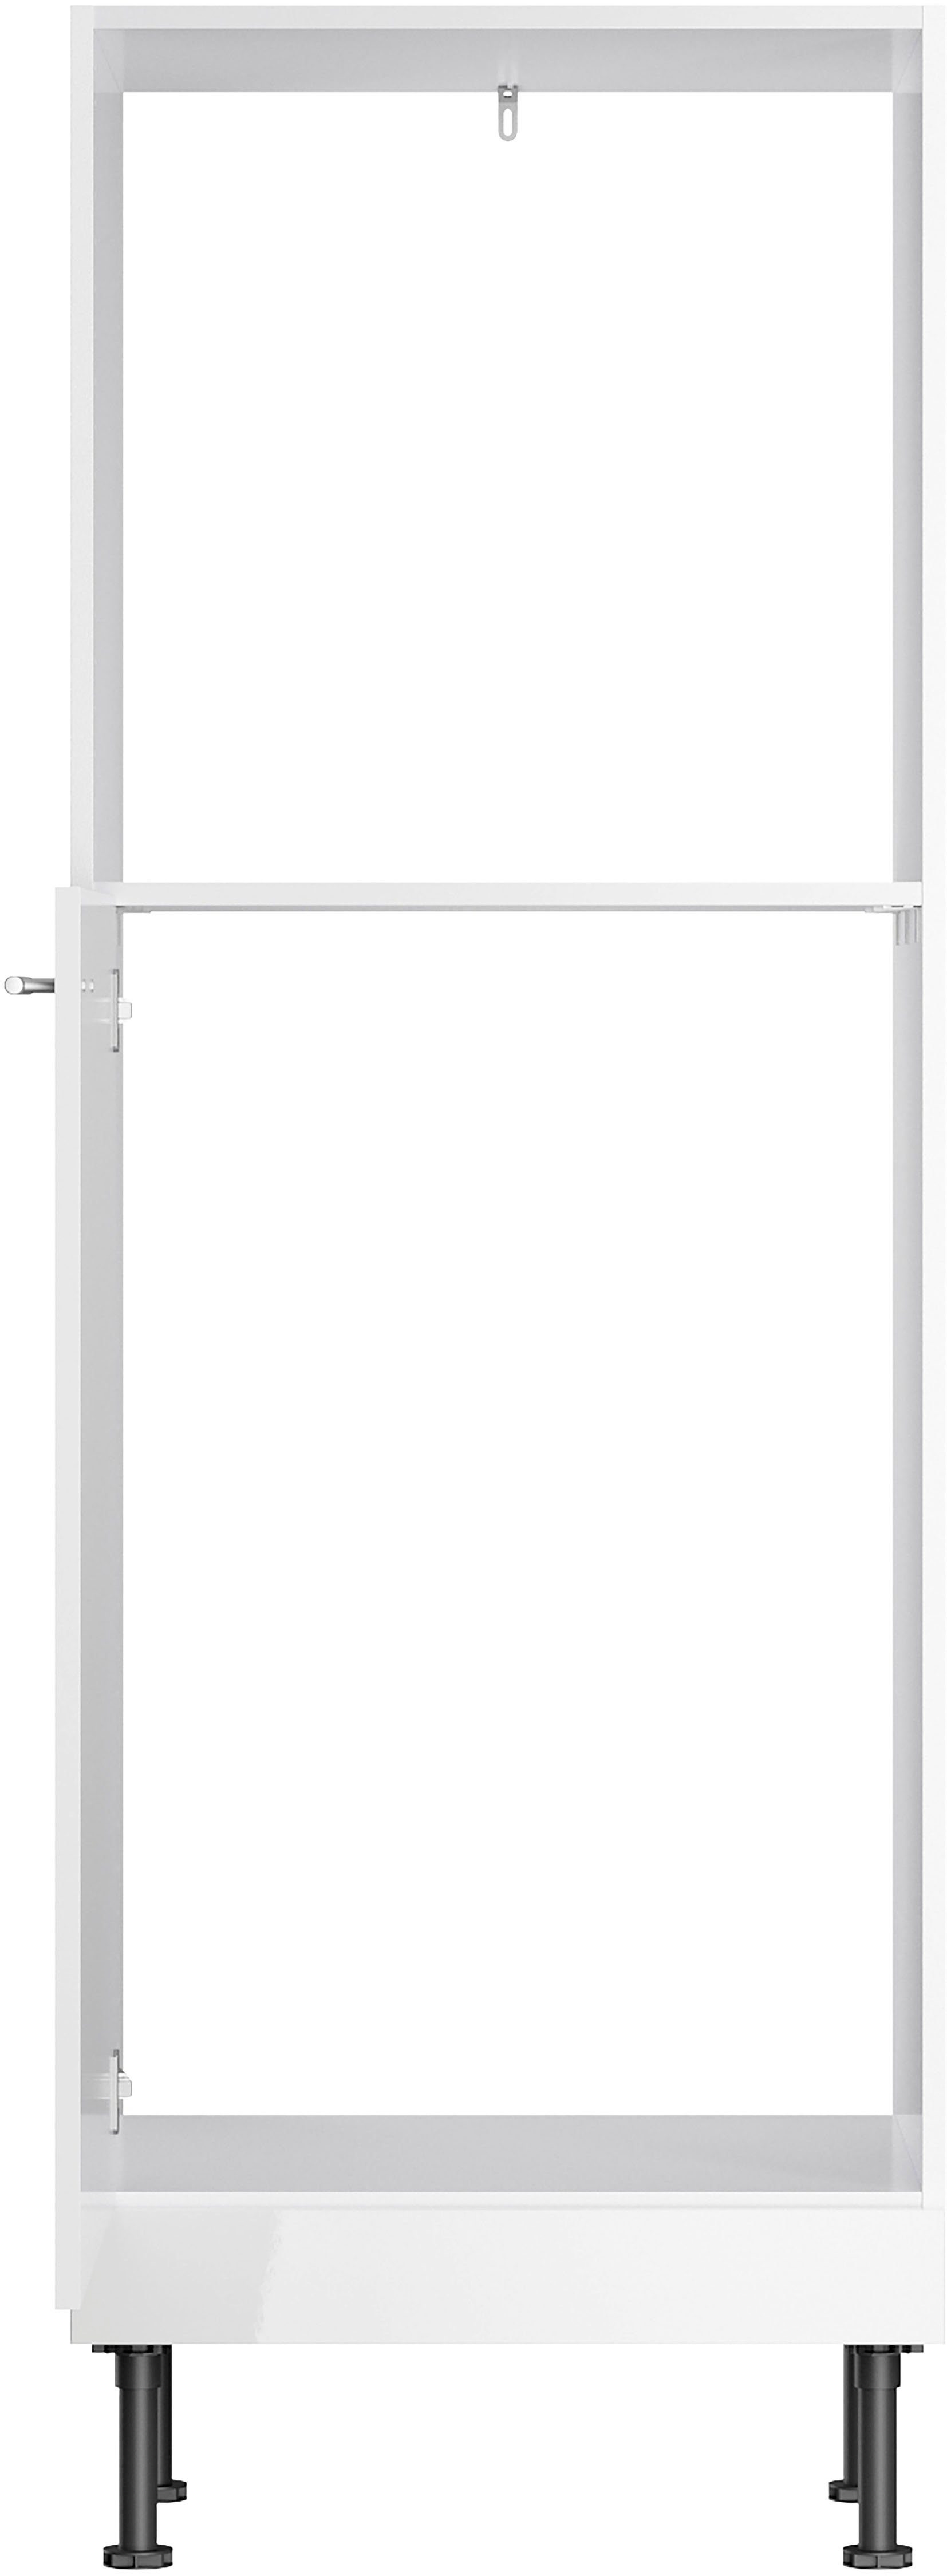 60 cm weiß Klara Breite Backofen/Kühlumbauschrank lackiert/weiß OPTIFIT